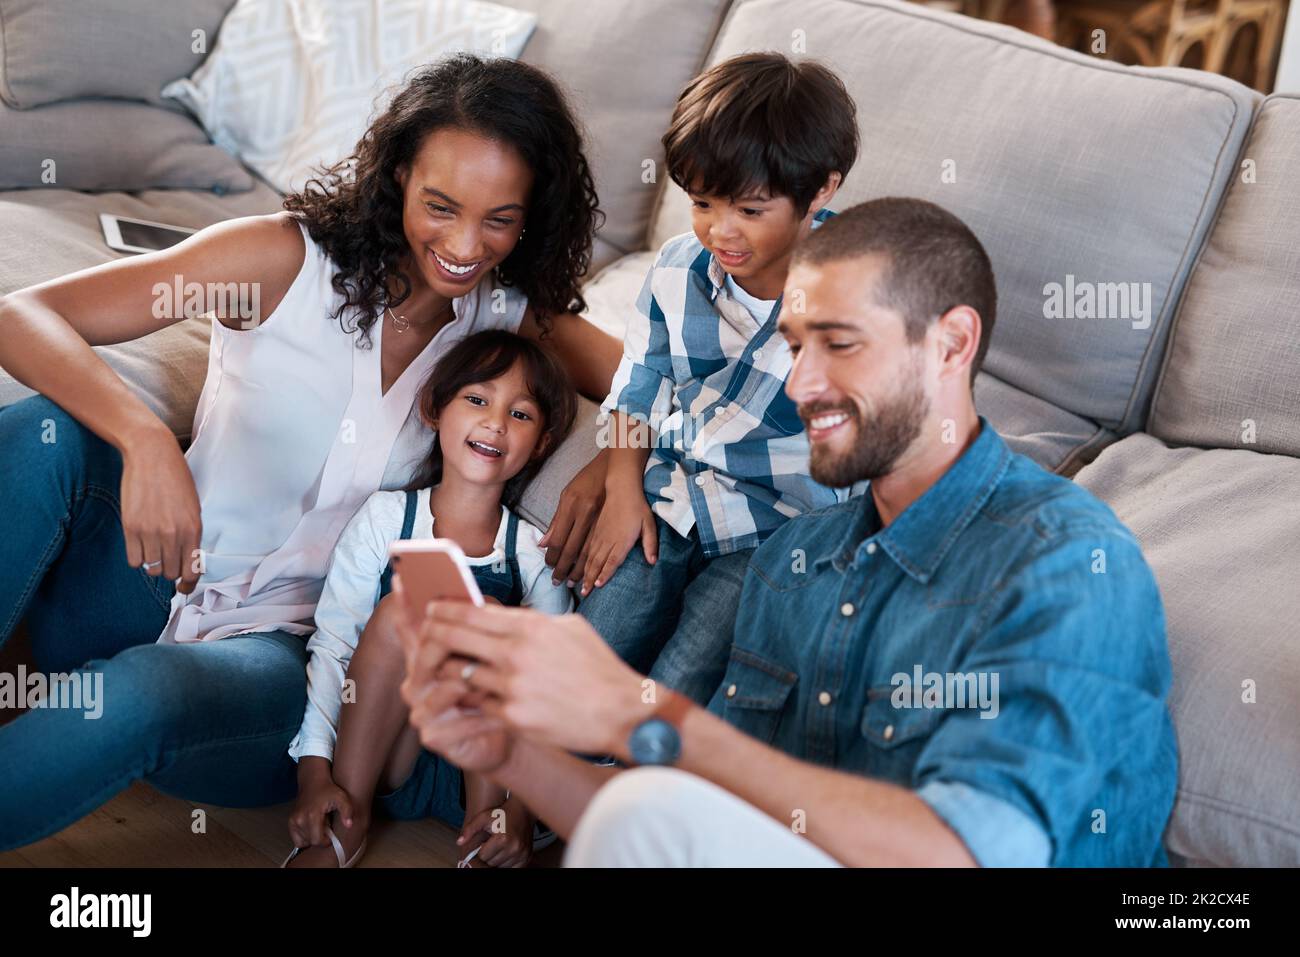 Guardate questo. Scatto di una famiglia di quattro che guarda qualcosa su un cellulare. Foto Stock